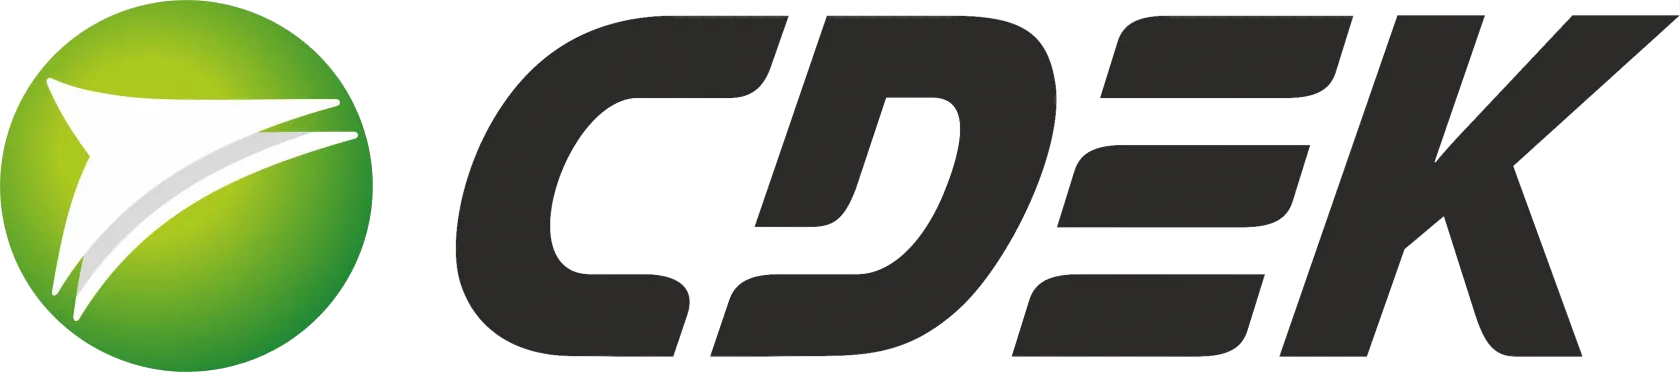 Логотип службы